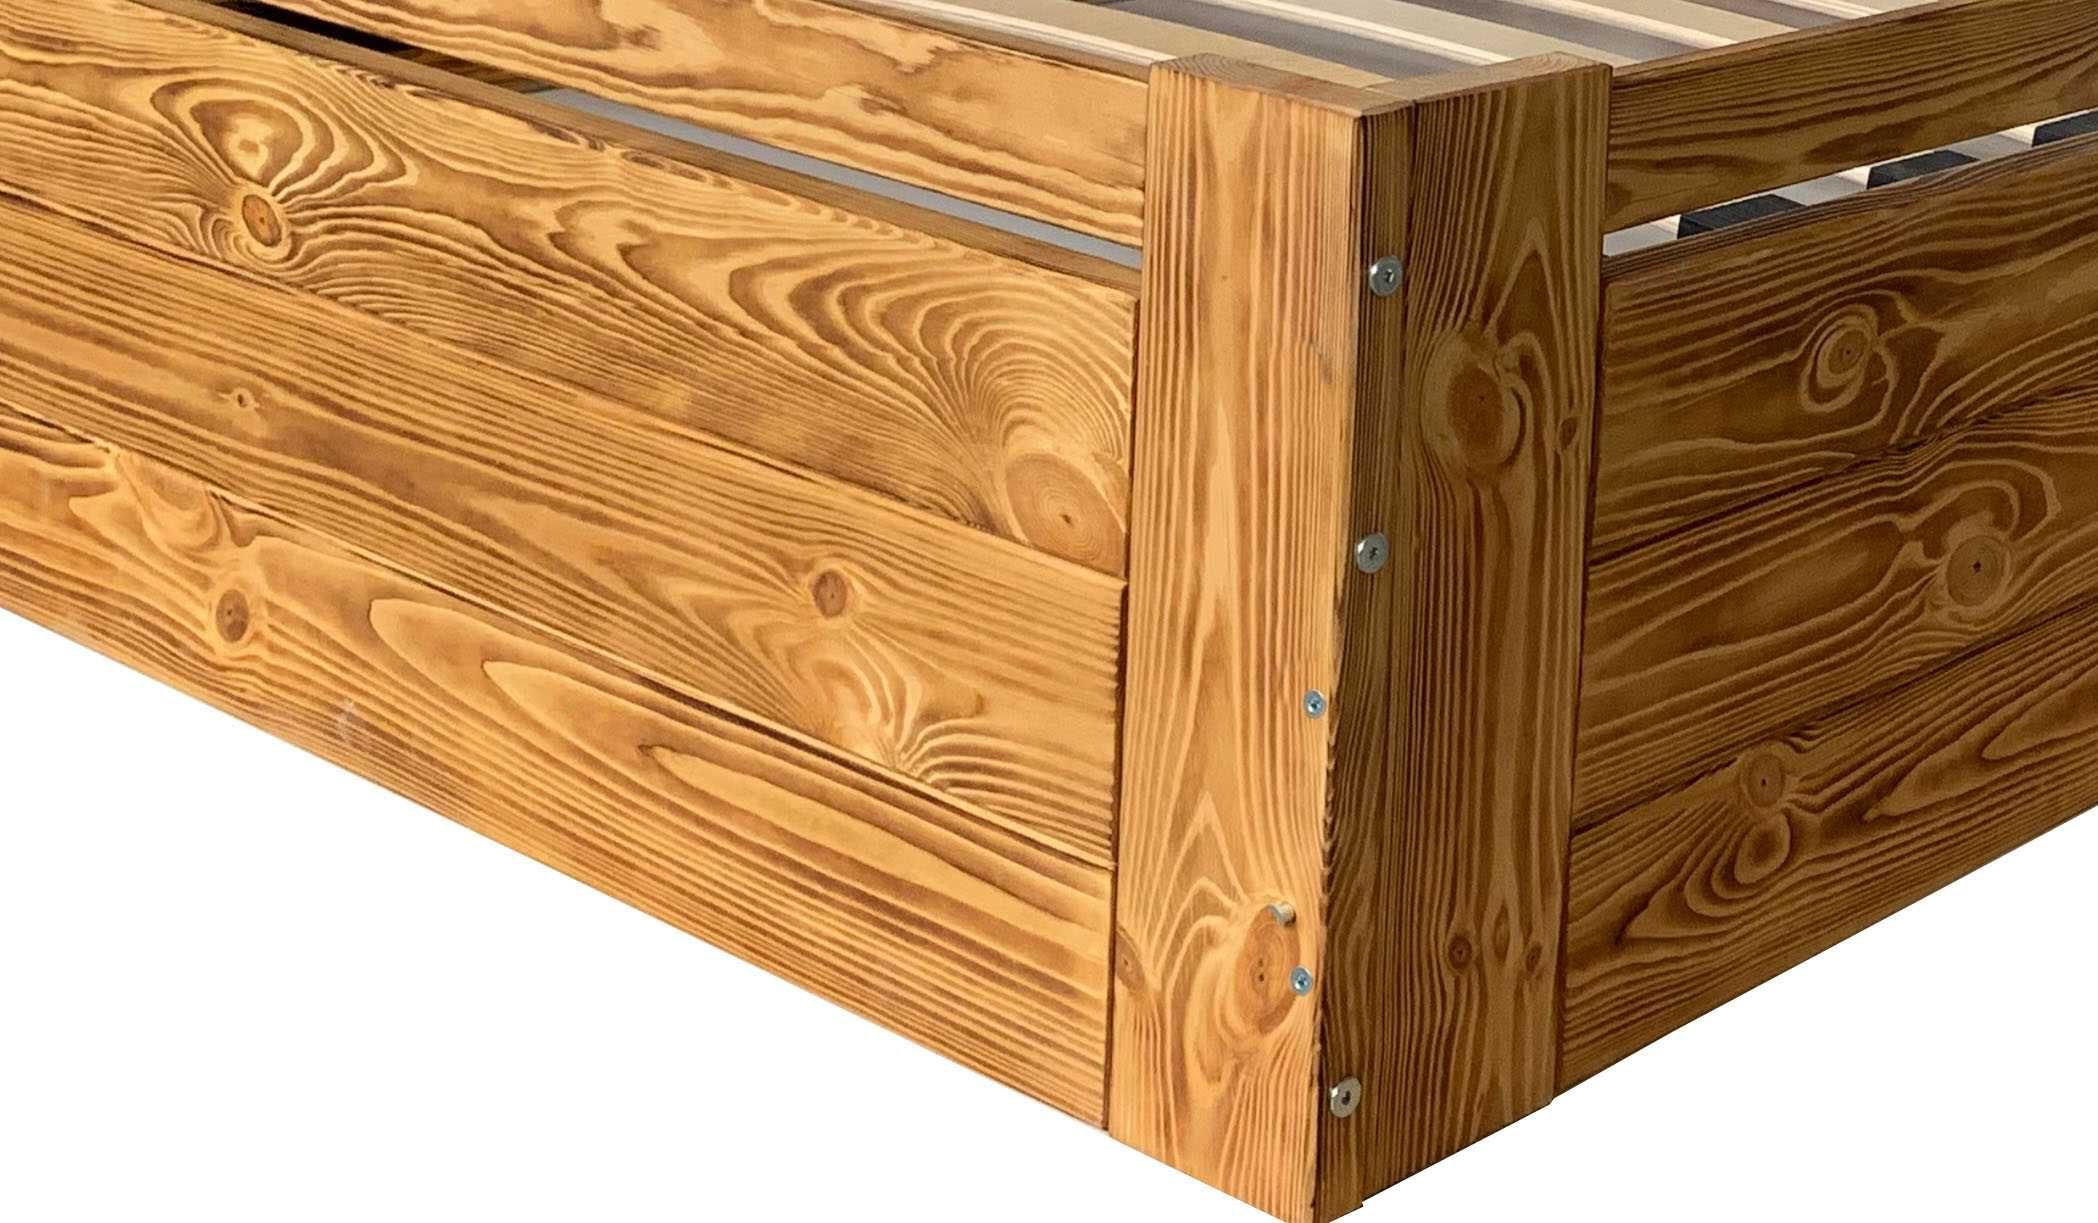 Łóżko 140x200 drewniane LISTWY GIĘTE 40 szt Zagłowie 85 cm KOLORY